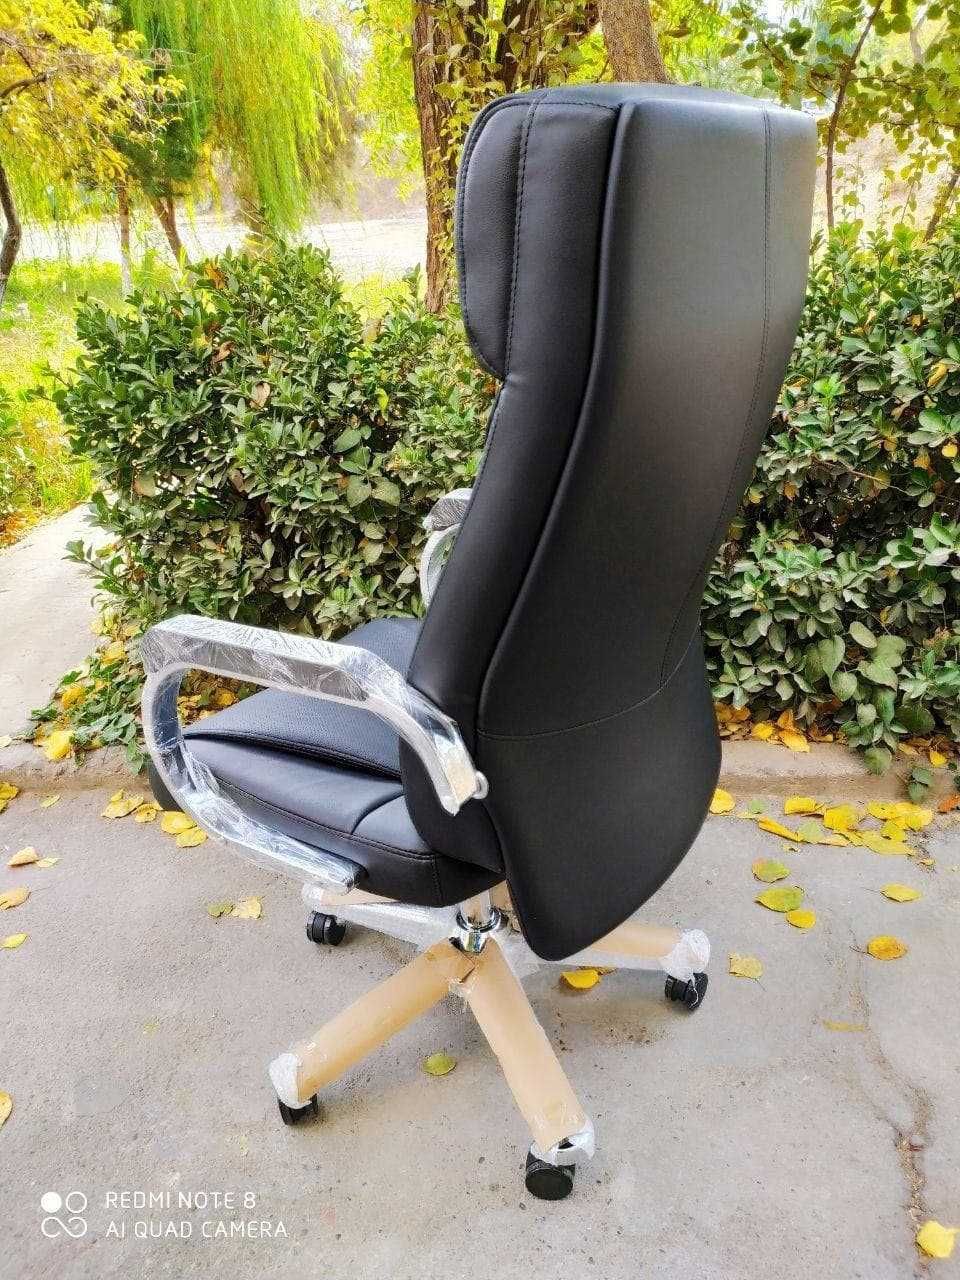 Руководительское кресло Just черный (доставка бесплатная, гарантия)